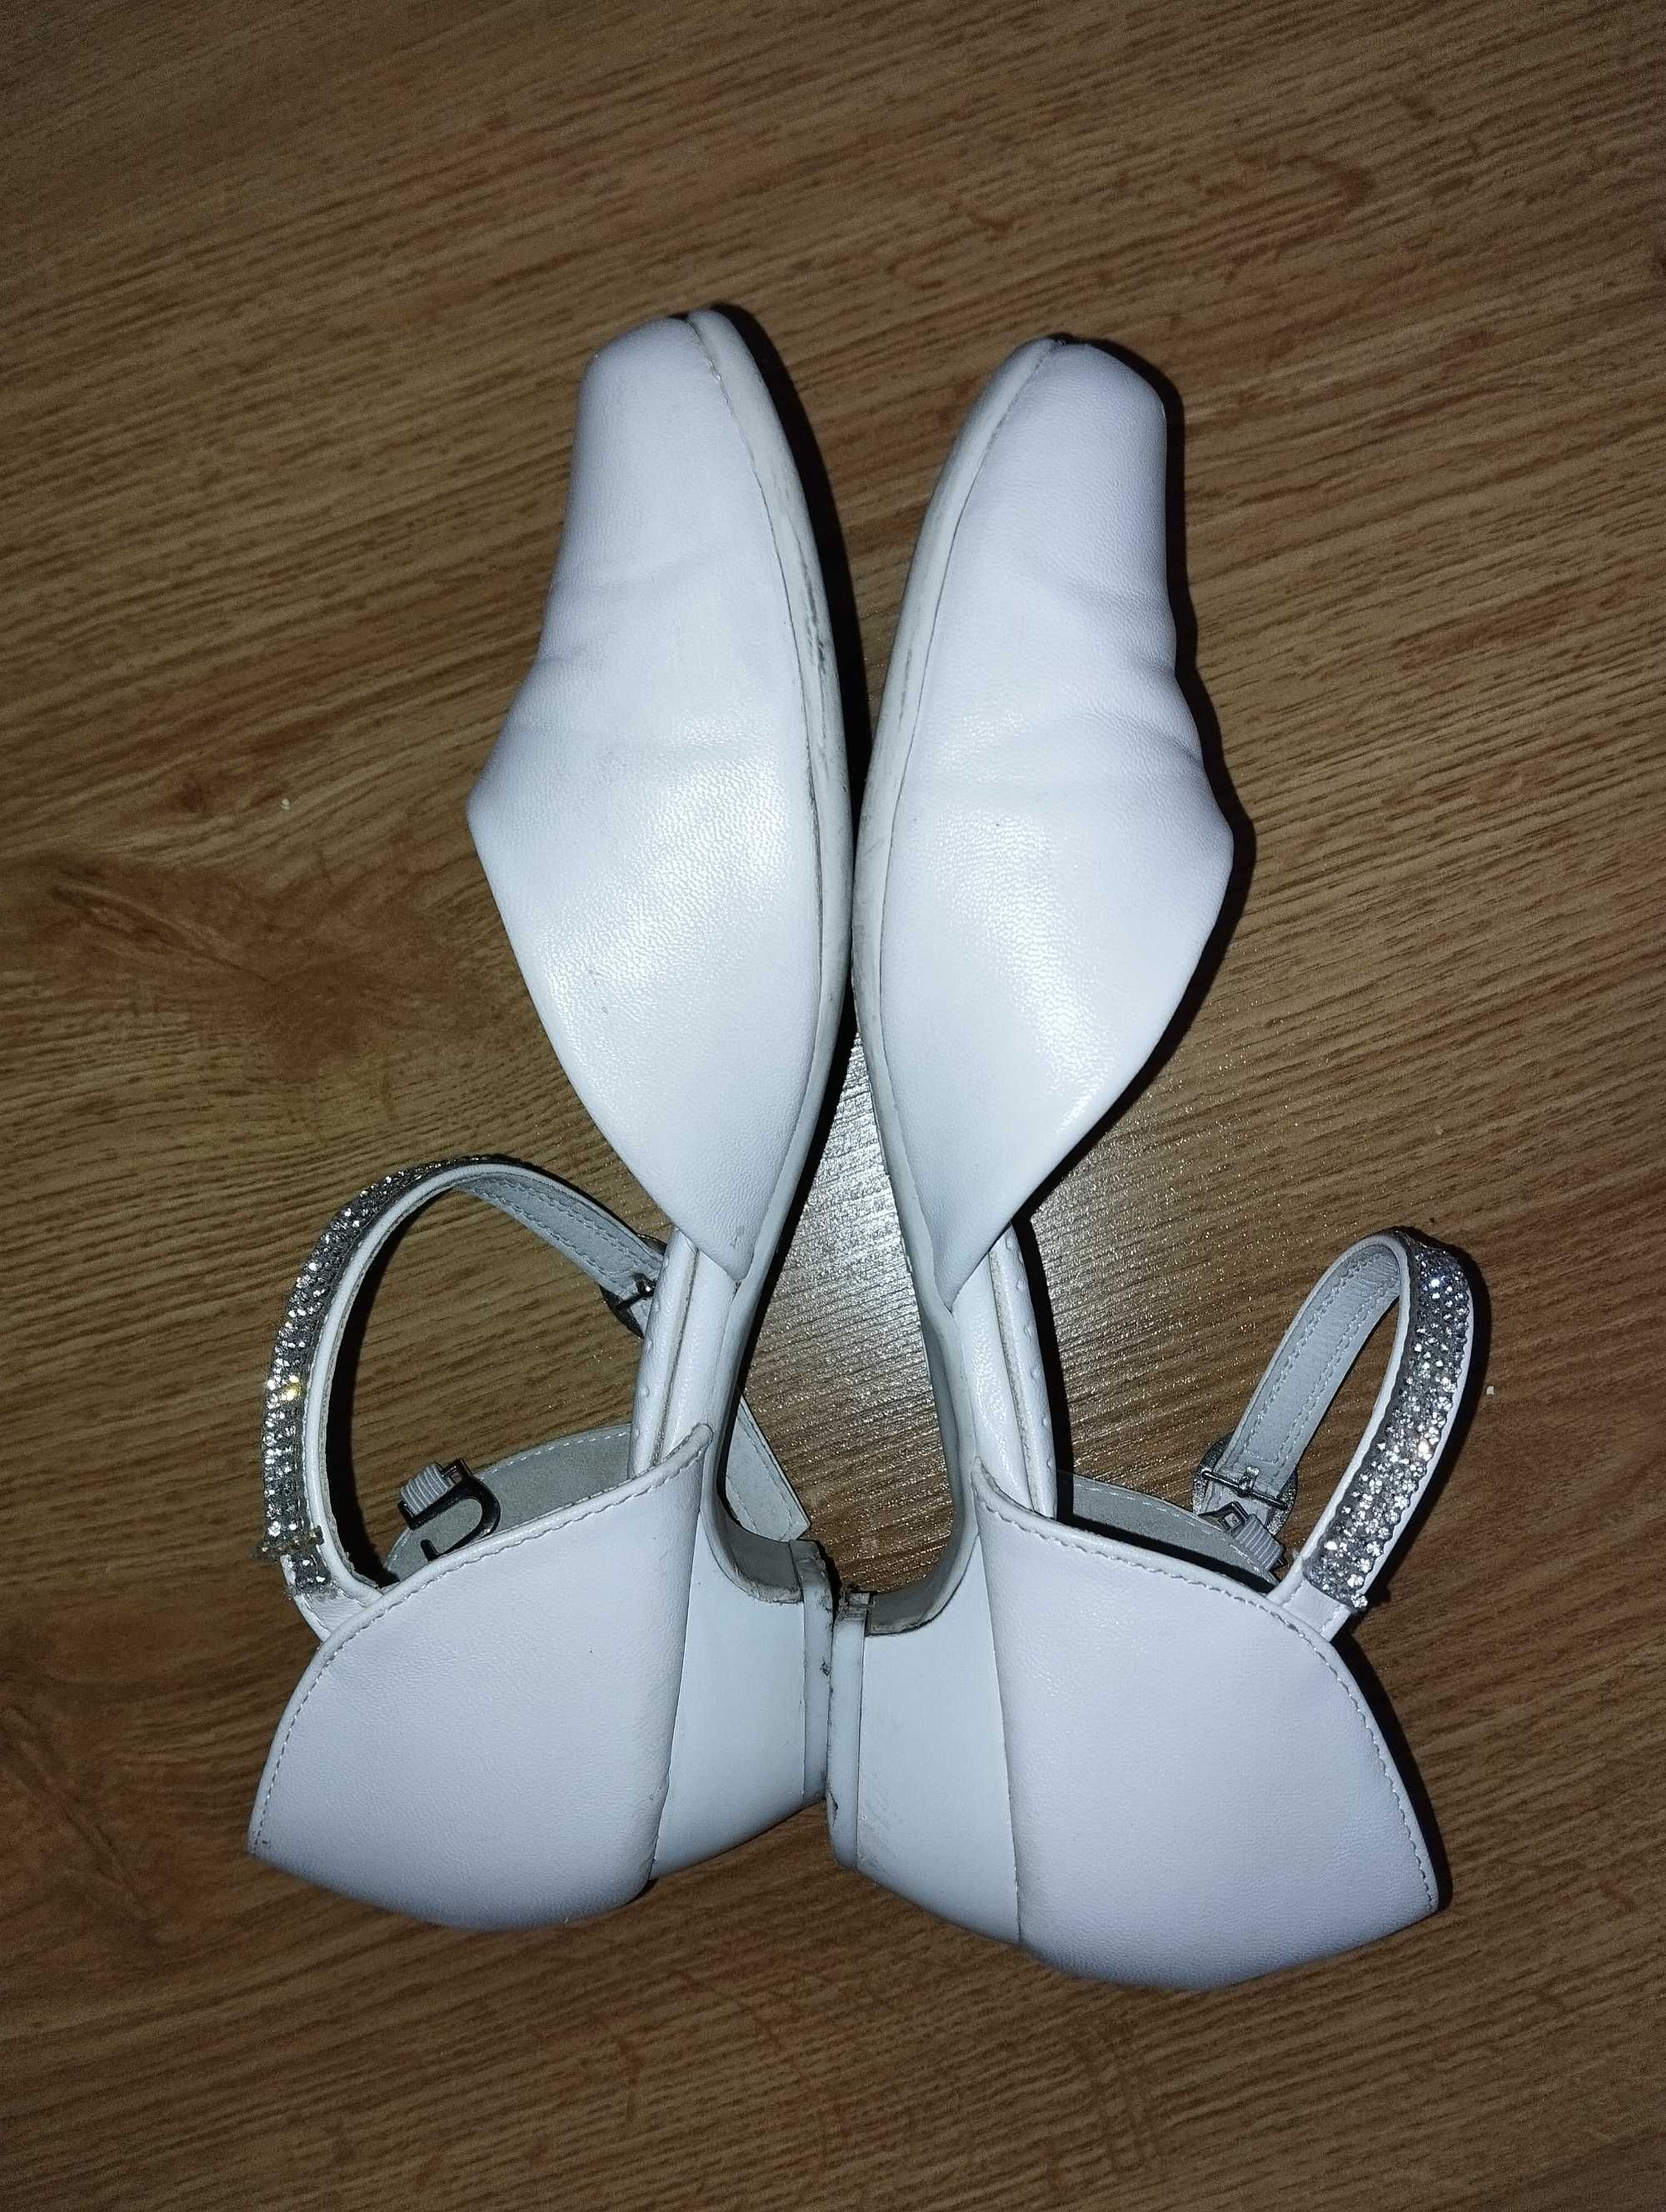 Białe pantofle buty r37 komunia Nelli blu wkł 23.5